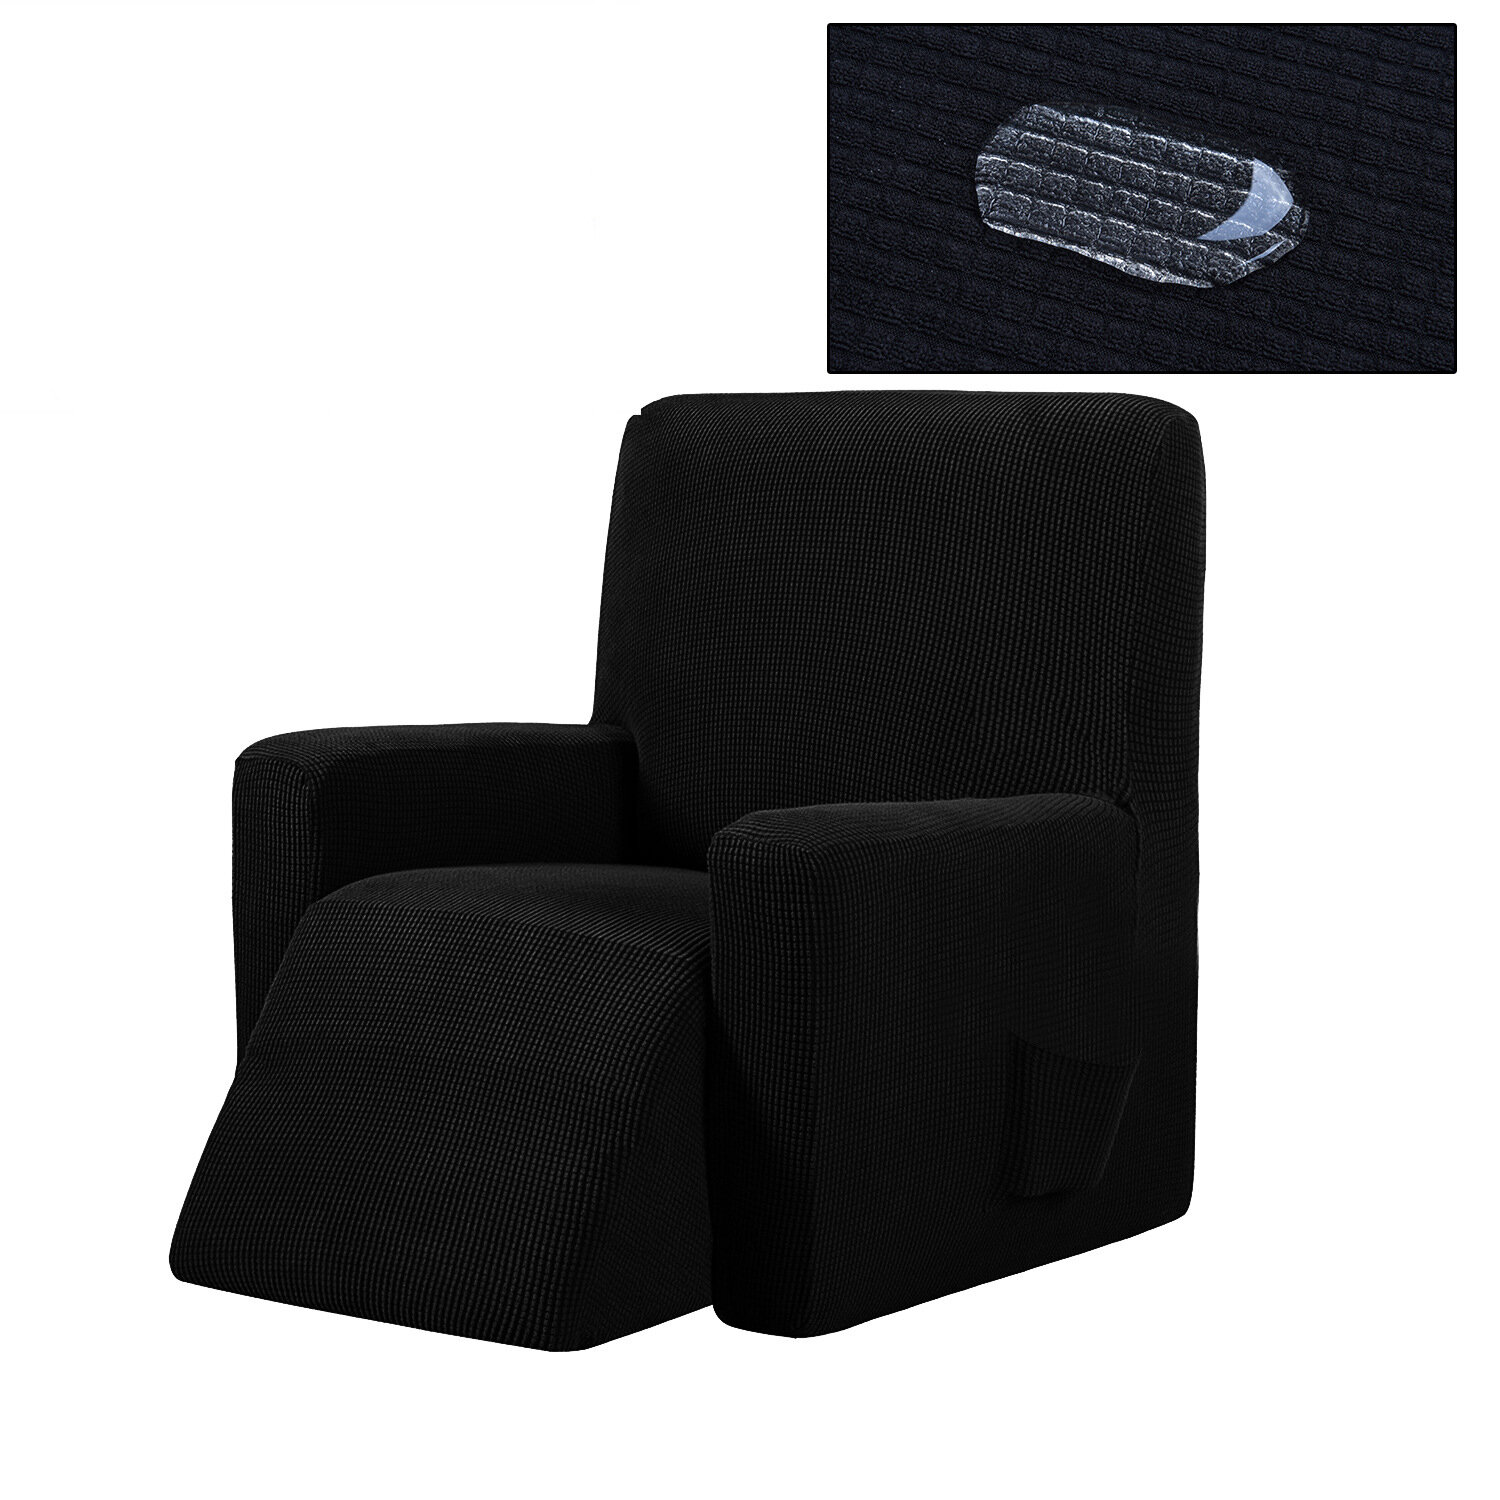 غطاء كرسي كرسي غير قابل للانزلاق غطاء أريكة للتدليك قابل للتمدد واقي مقعد كرسي نقي اللون شامل كليًا غطاء مقعد مرن للمكتب